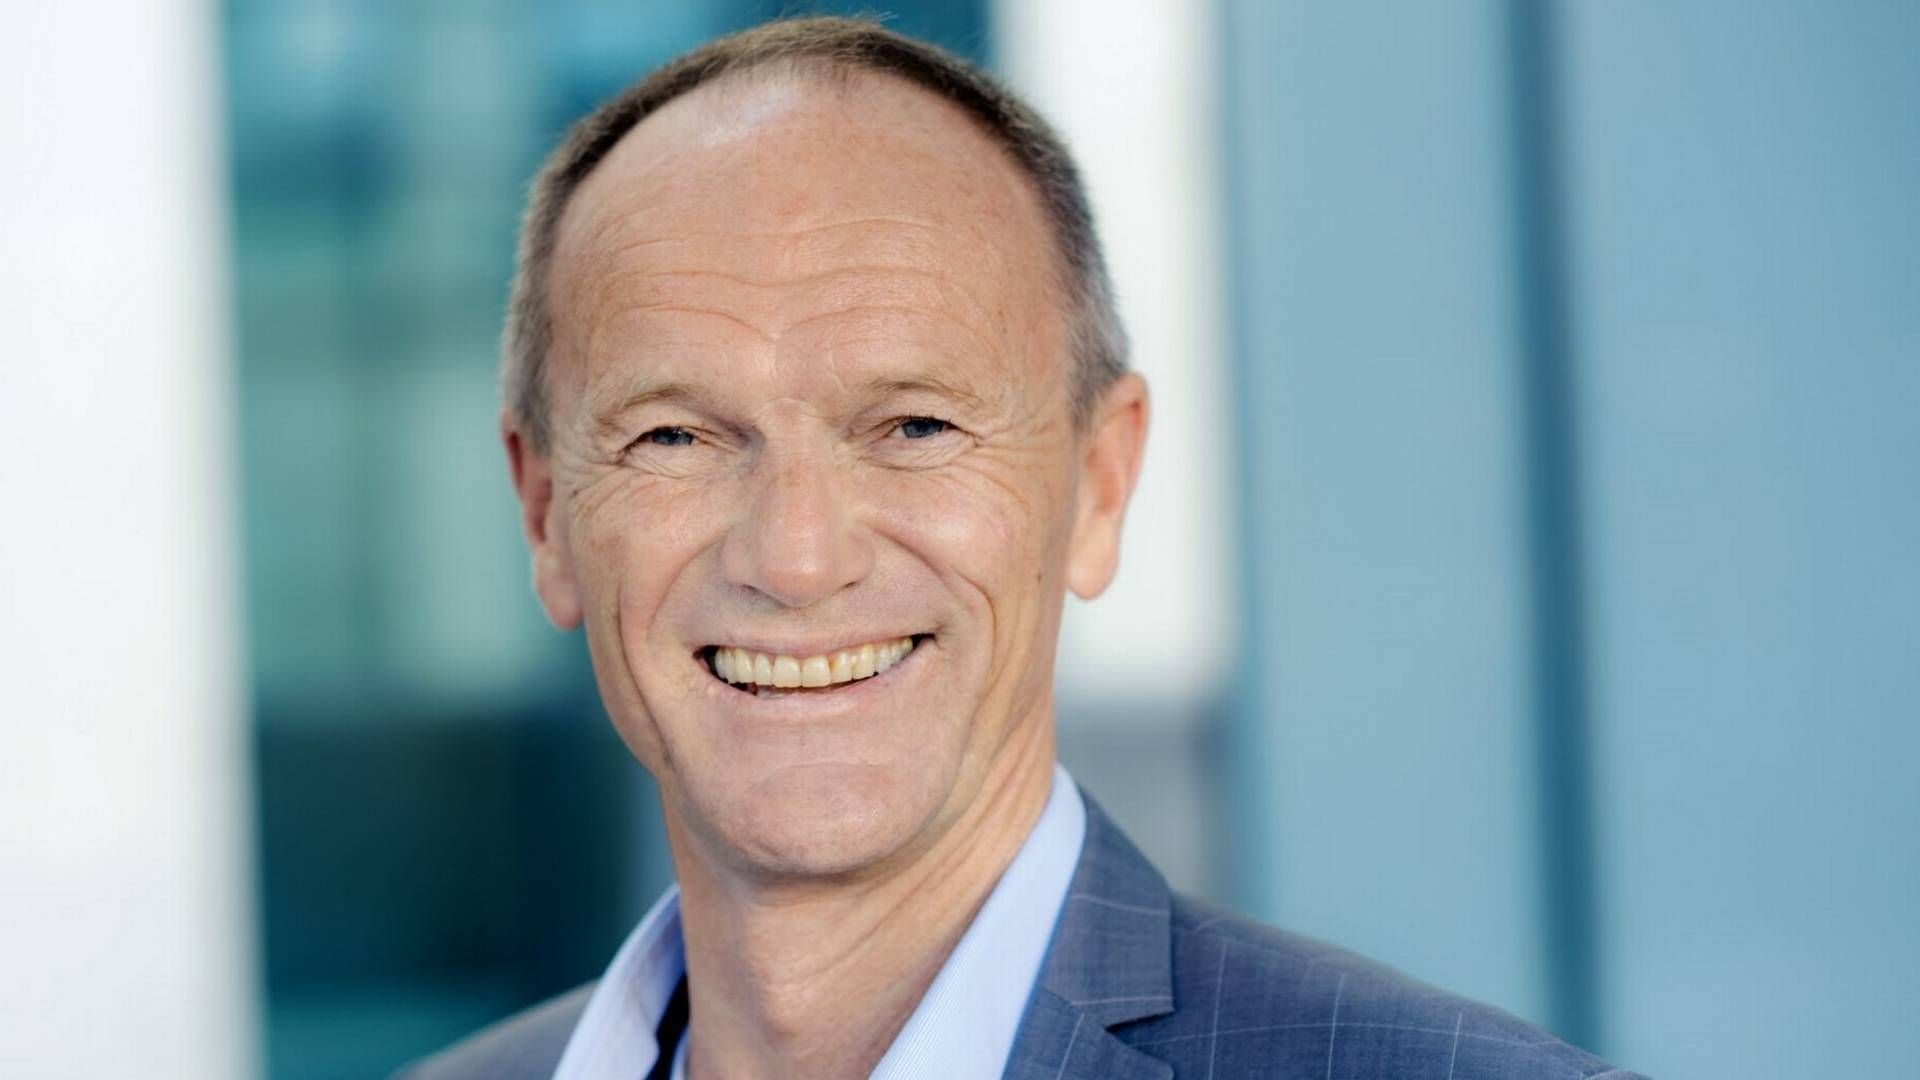 FORNØYD: Administrerende direktør Gunnar Gjørtz i KLP Eiendom mener selskapet har leverte gode resultater så langt i 2021. | Foto: KLP